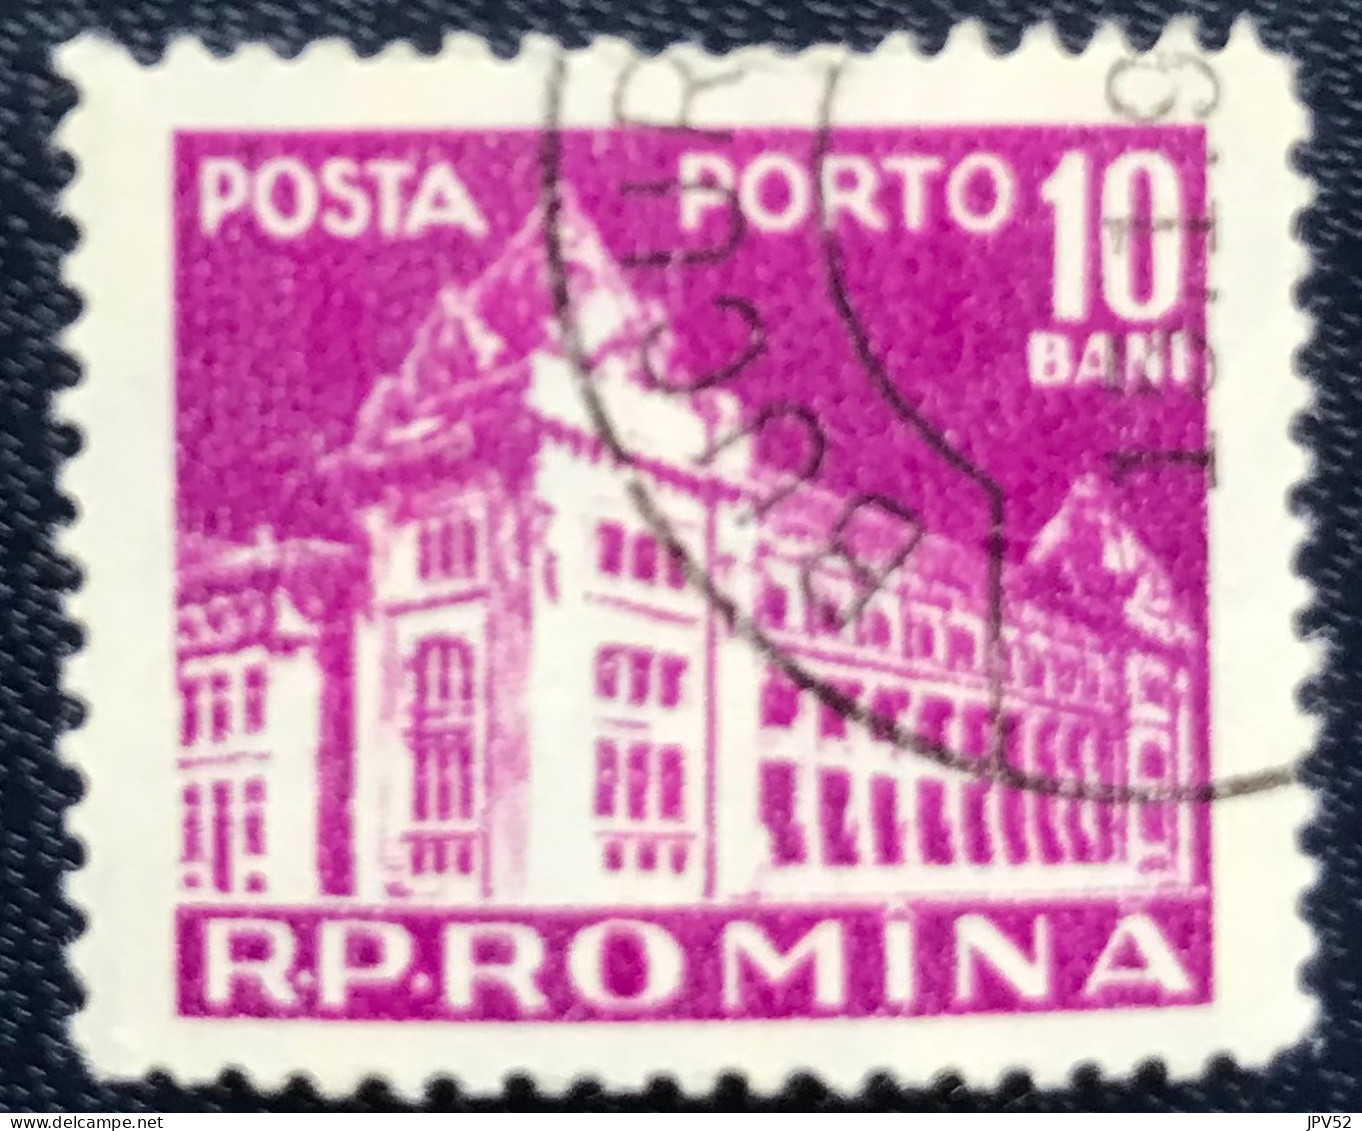 Romana - Roemenië - C14/54 - 1957 - (°)used - Michel 103 - Postkantoor - Postage Due